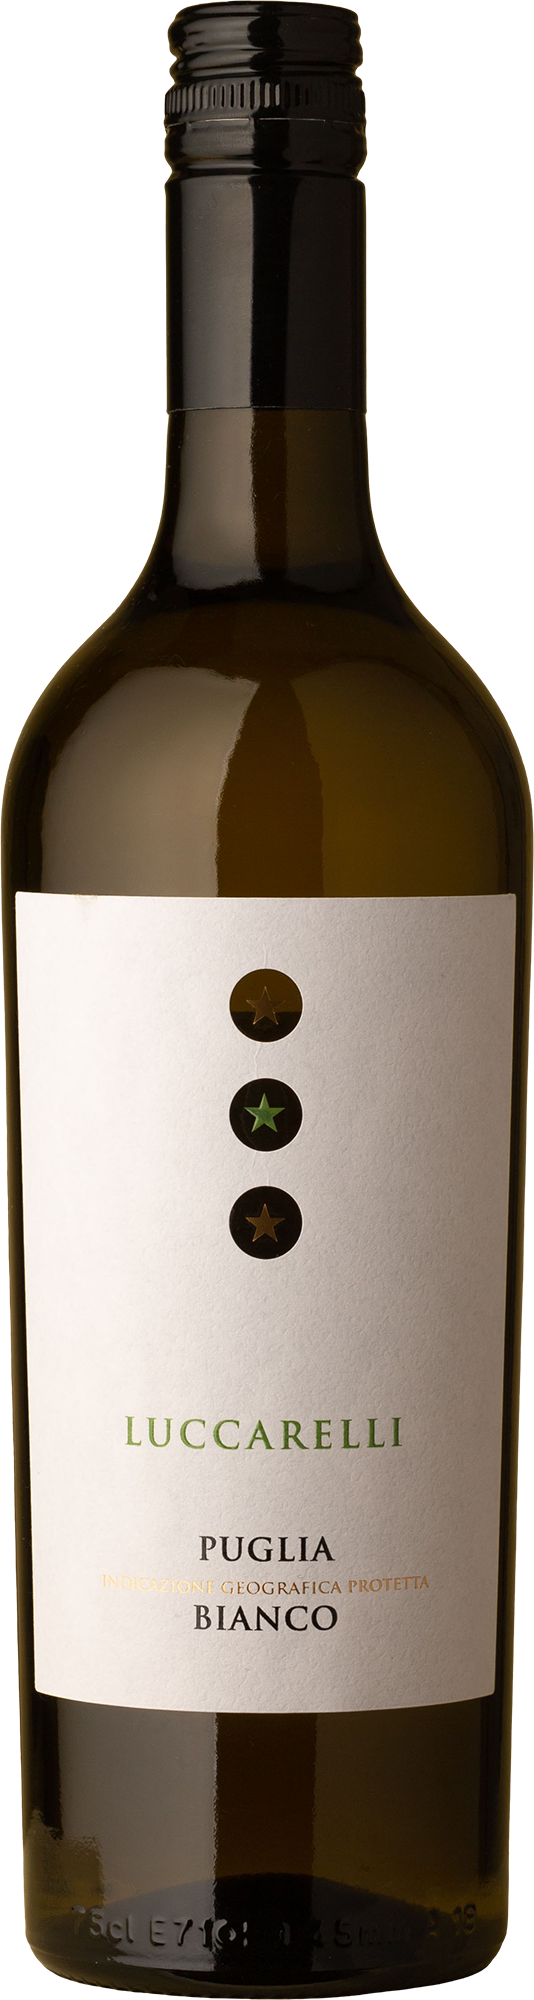 Luccarelli - Bianco 2019 White Wine